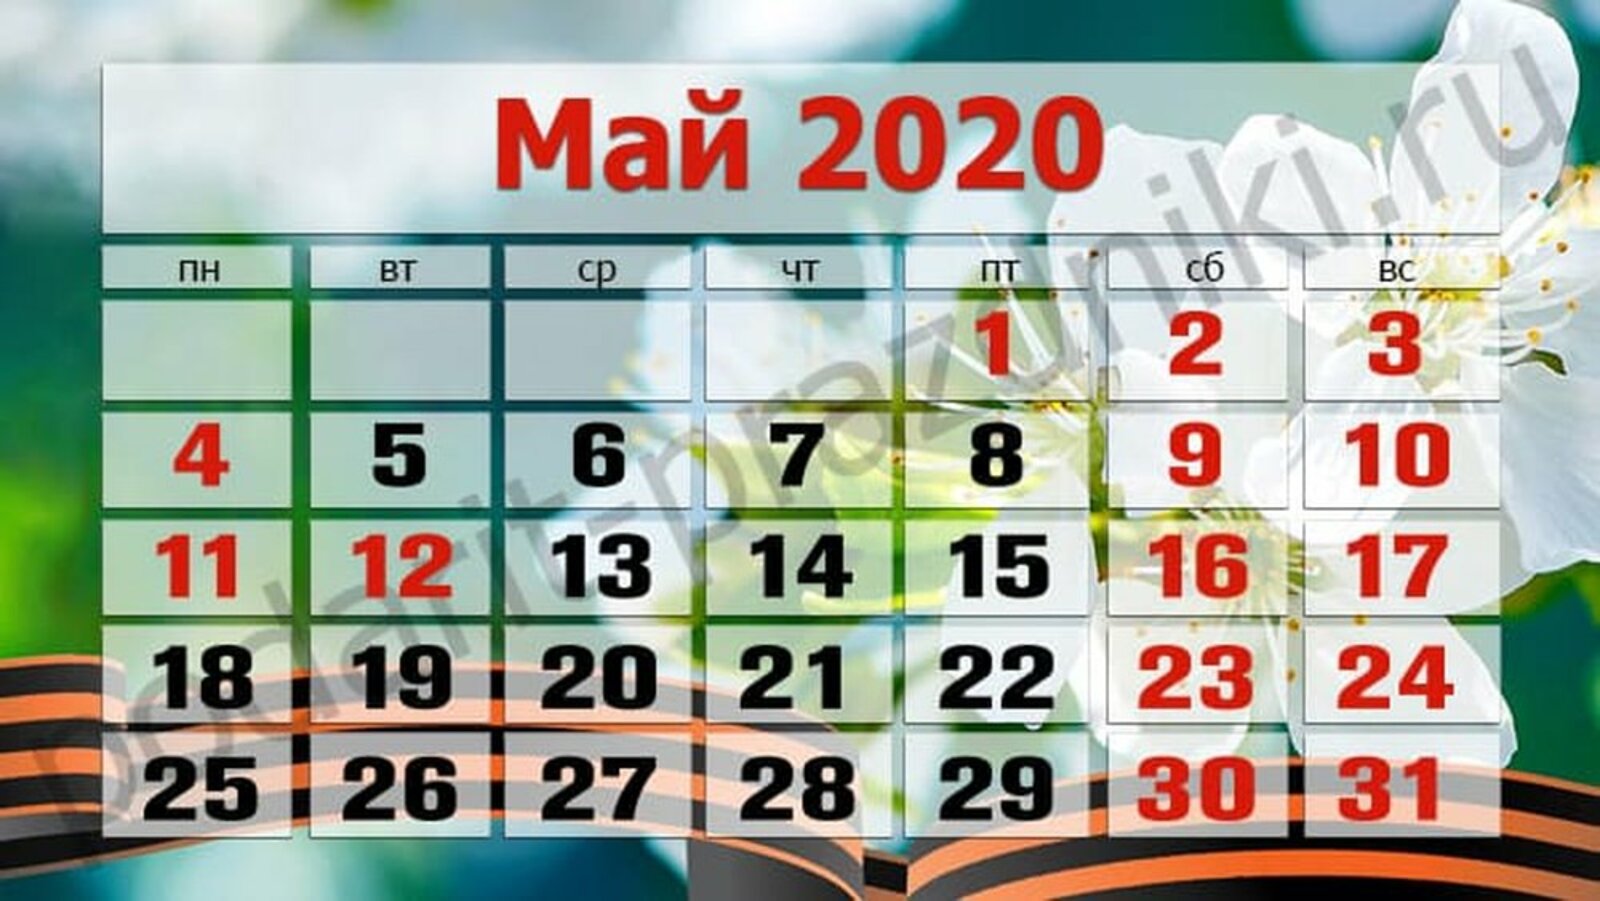 Июль сколько дней 2020